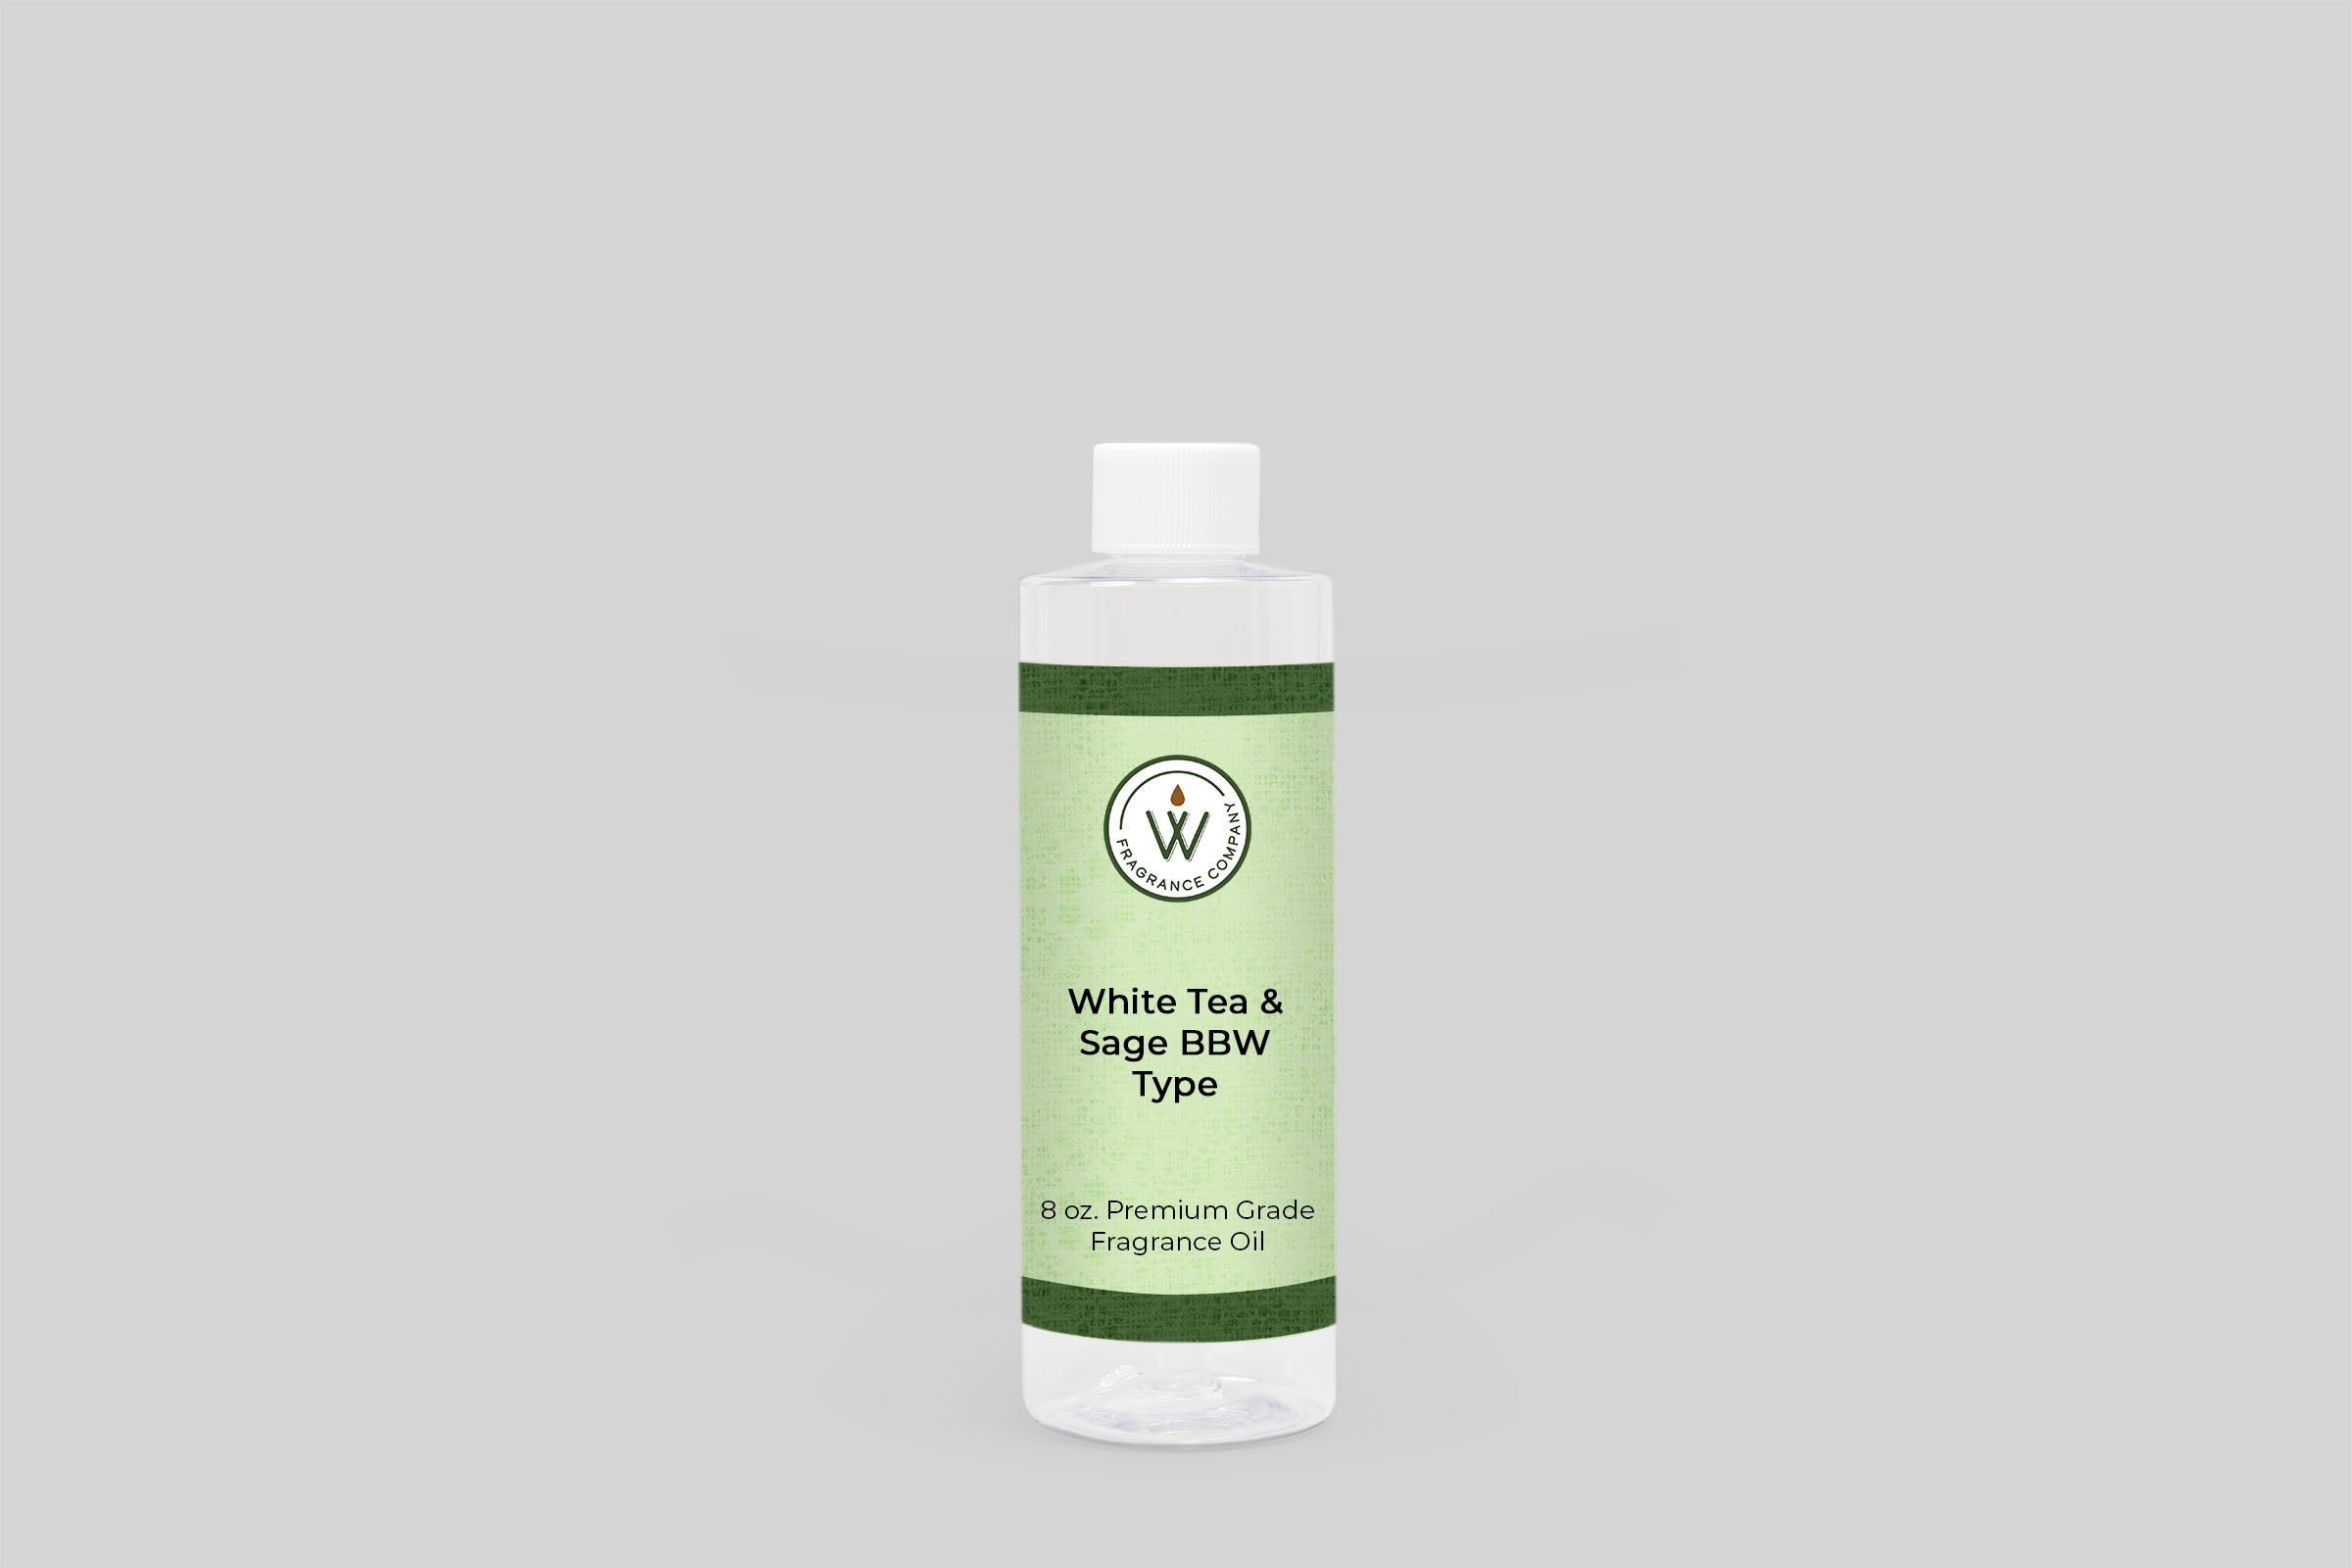 White Tea & Sage BBW Type Fragrance Oil